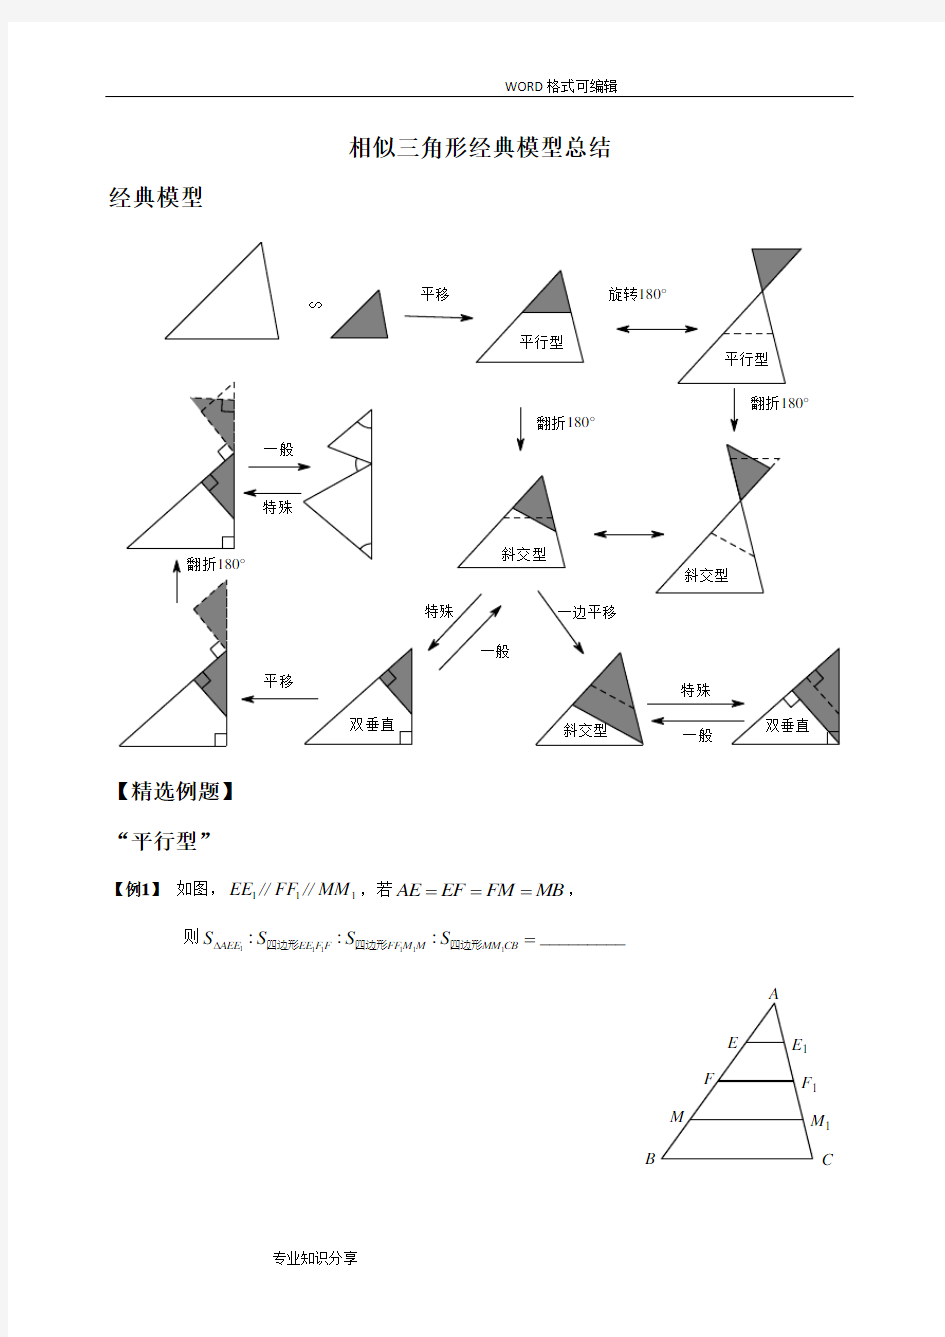 (完整版)相似三角形经典模型总结及例题分类